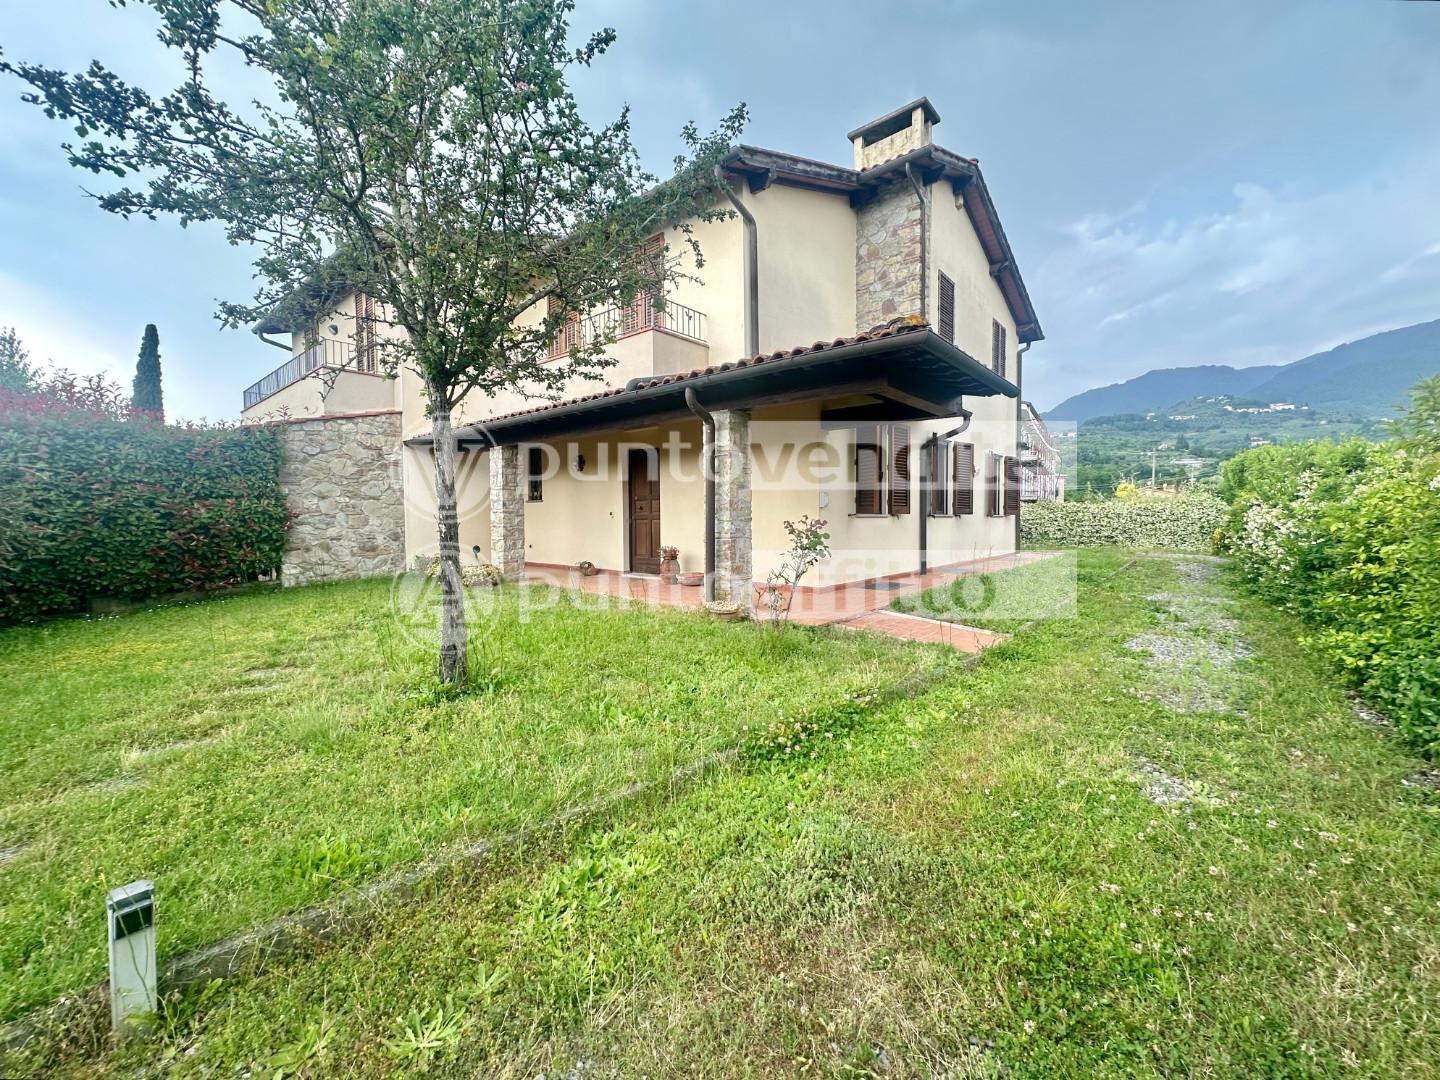 Villa Bifamiliare con giardino, Capannori marlia